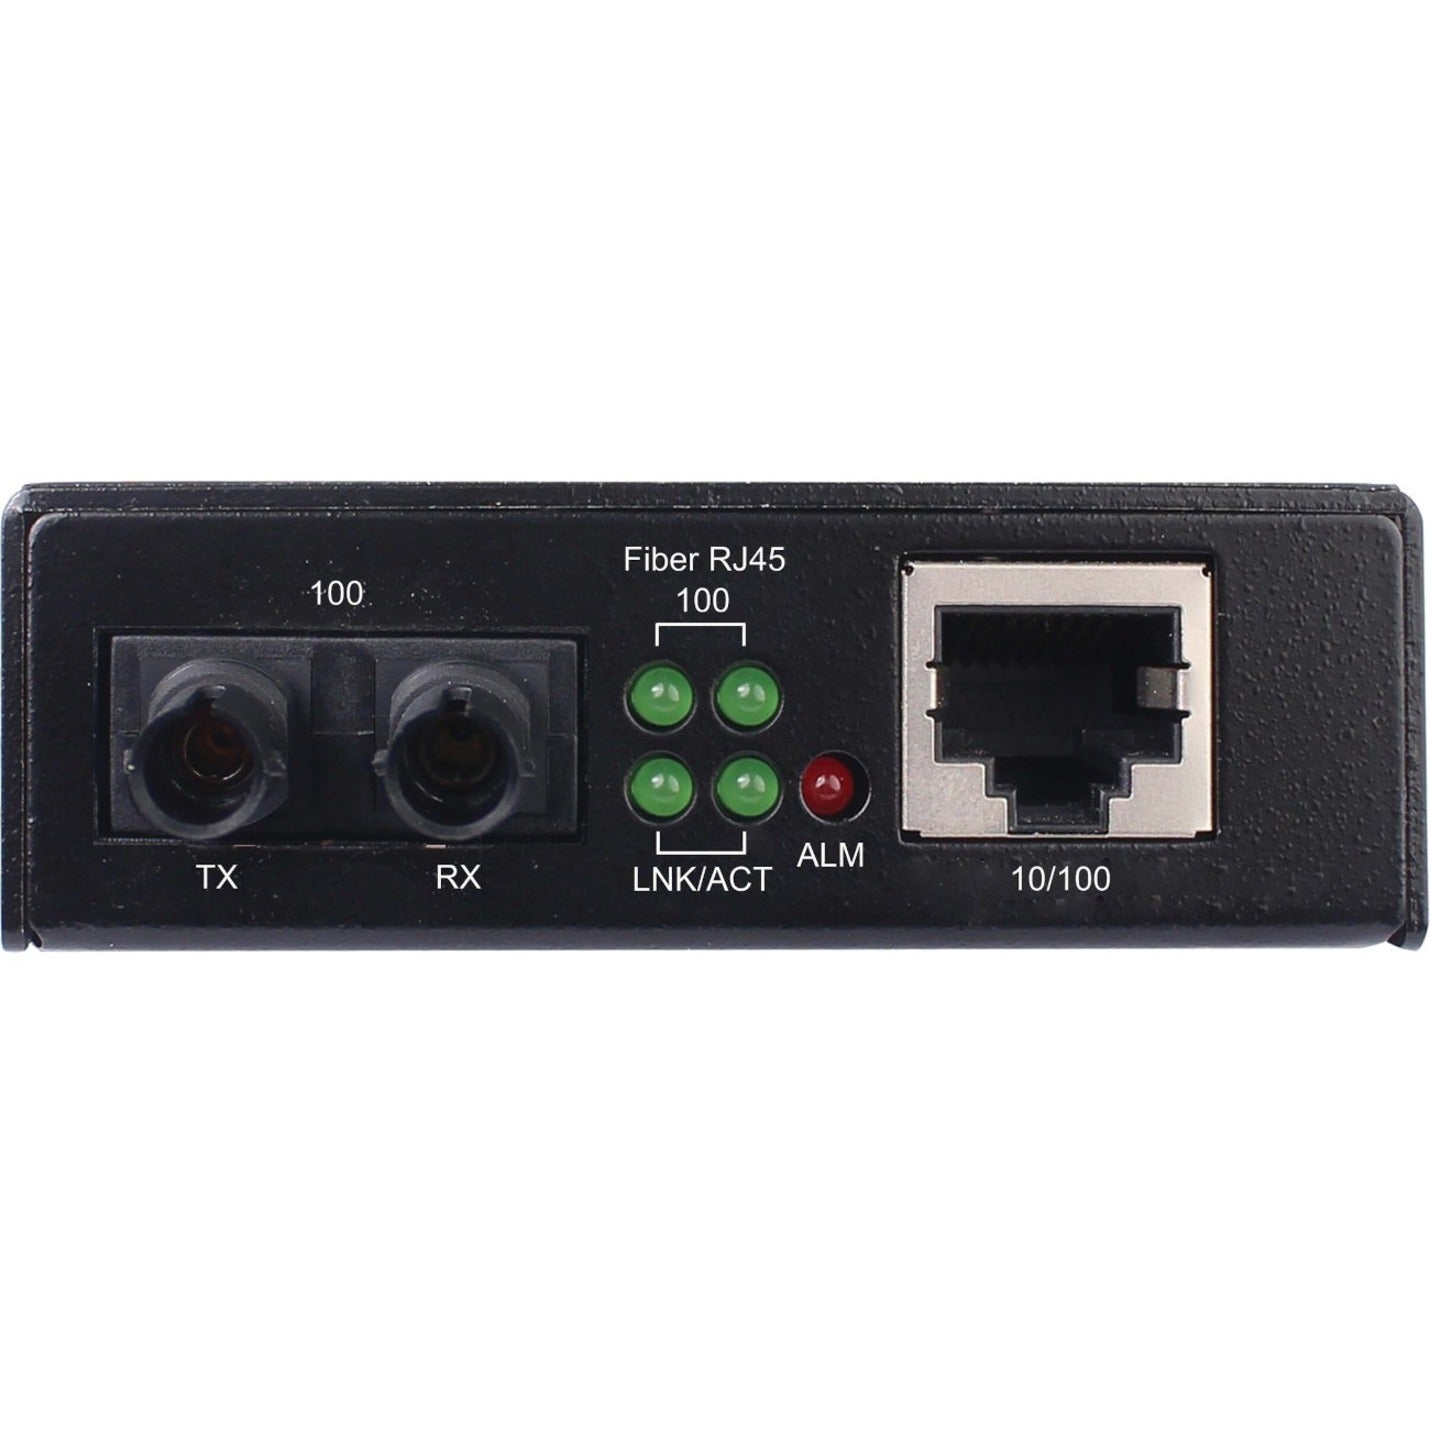 Tripp Lite N784-H01-STMM Transceiver/Media Converter, 10/100Base-TX, 100Base-FX, Fast Ethernet, Multi-mode, 1.24 Mile